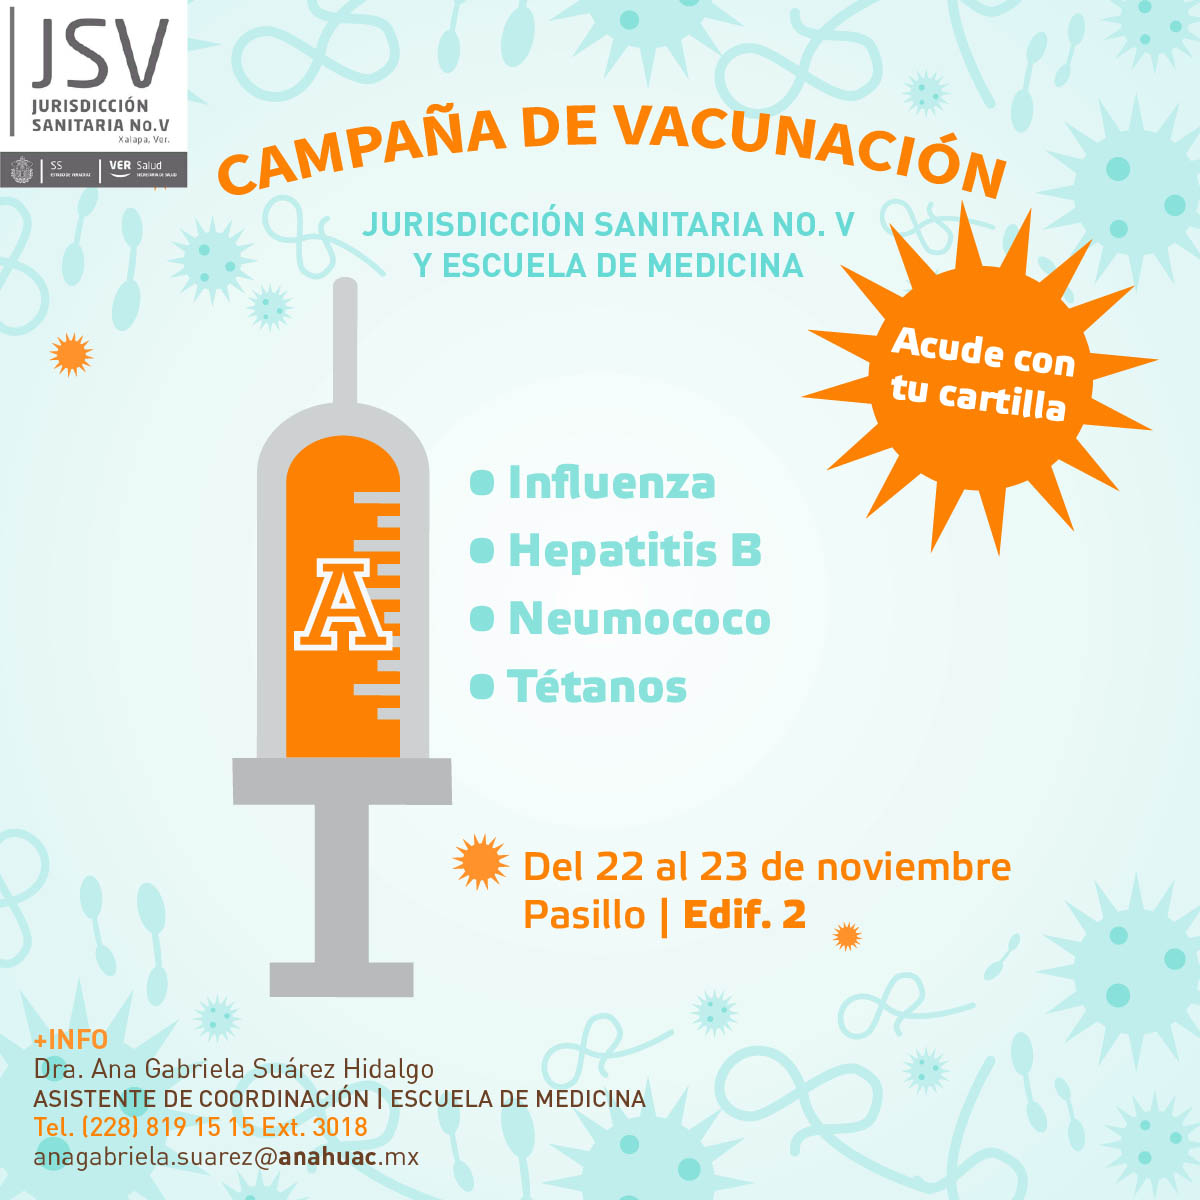 Vacunacion - Vacunación: OBJETIVO - Need help or have questions?